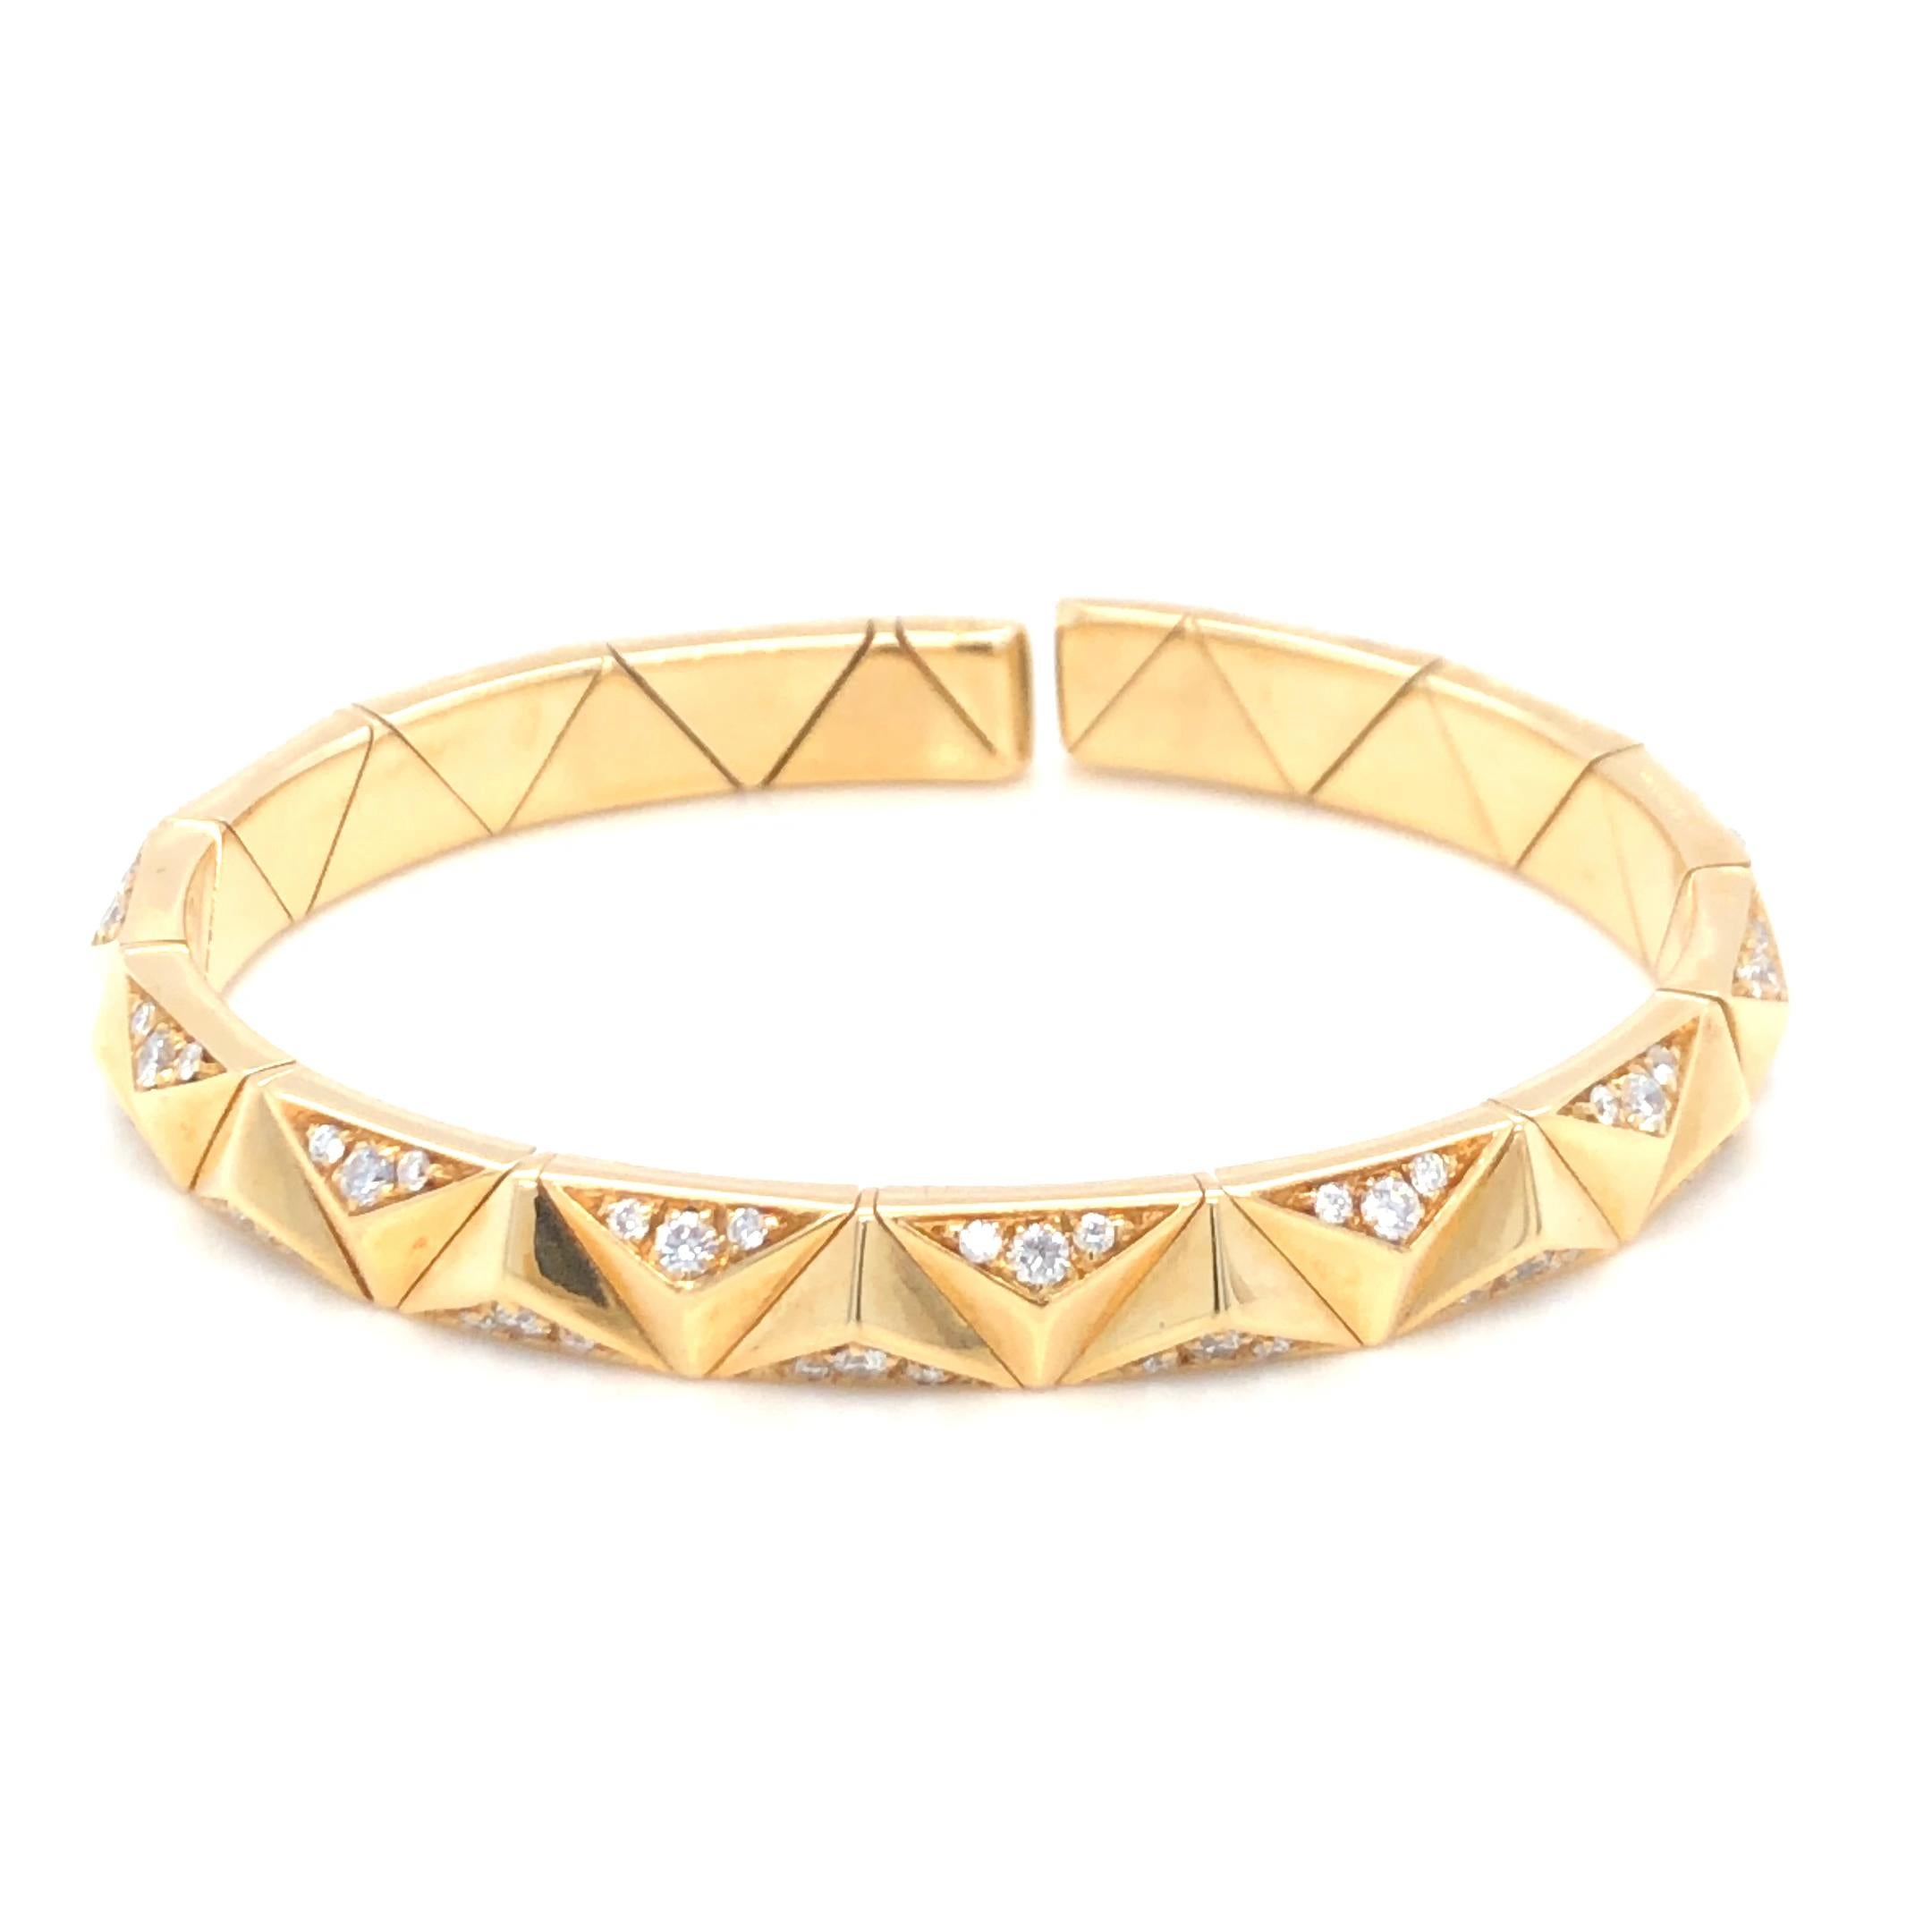 Estate Bulgari Contemporary Diamond Bracelet in 18K Yellow Gold. Le bracelet comporte environ 0,85ctw de diamants ronds de taille brillante. Bracelet souple et ouvert. 
6